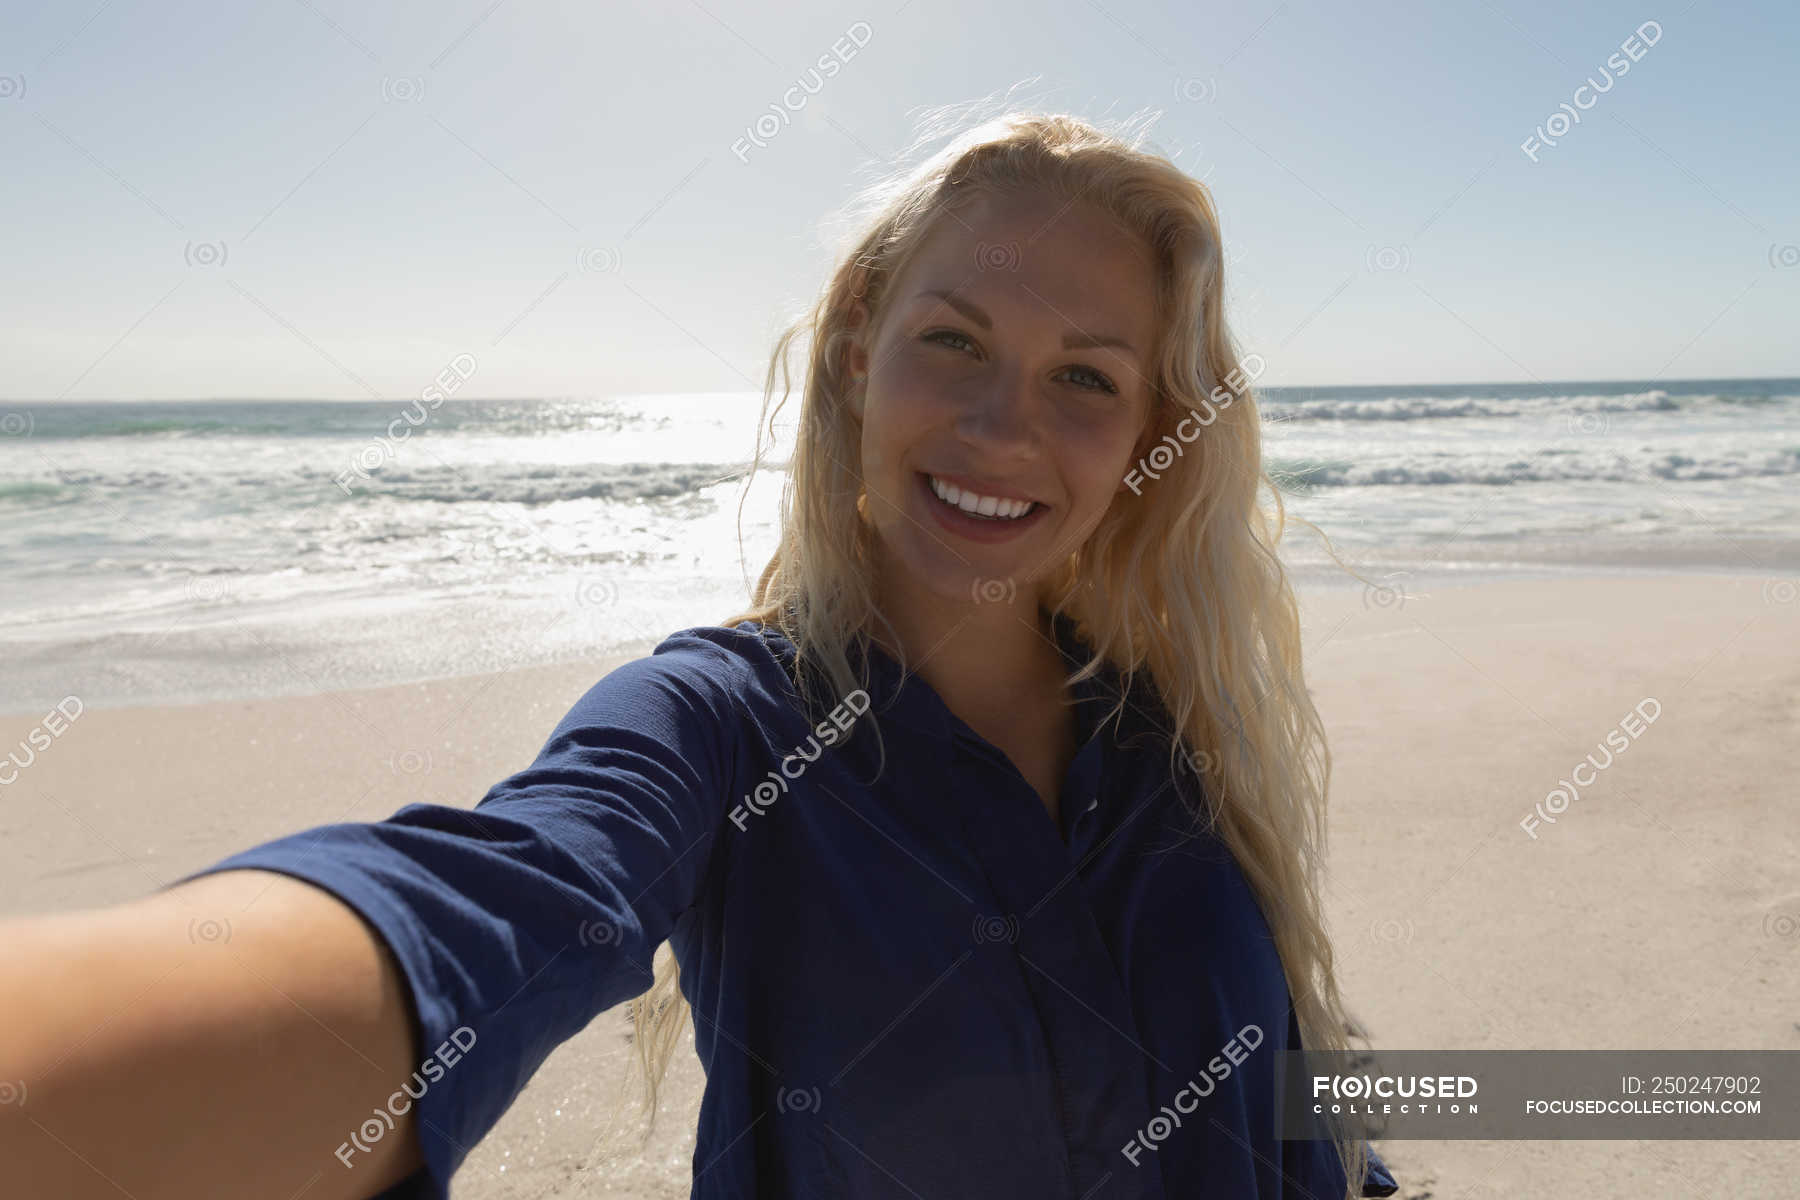 selfie blonde beauty